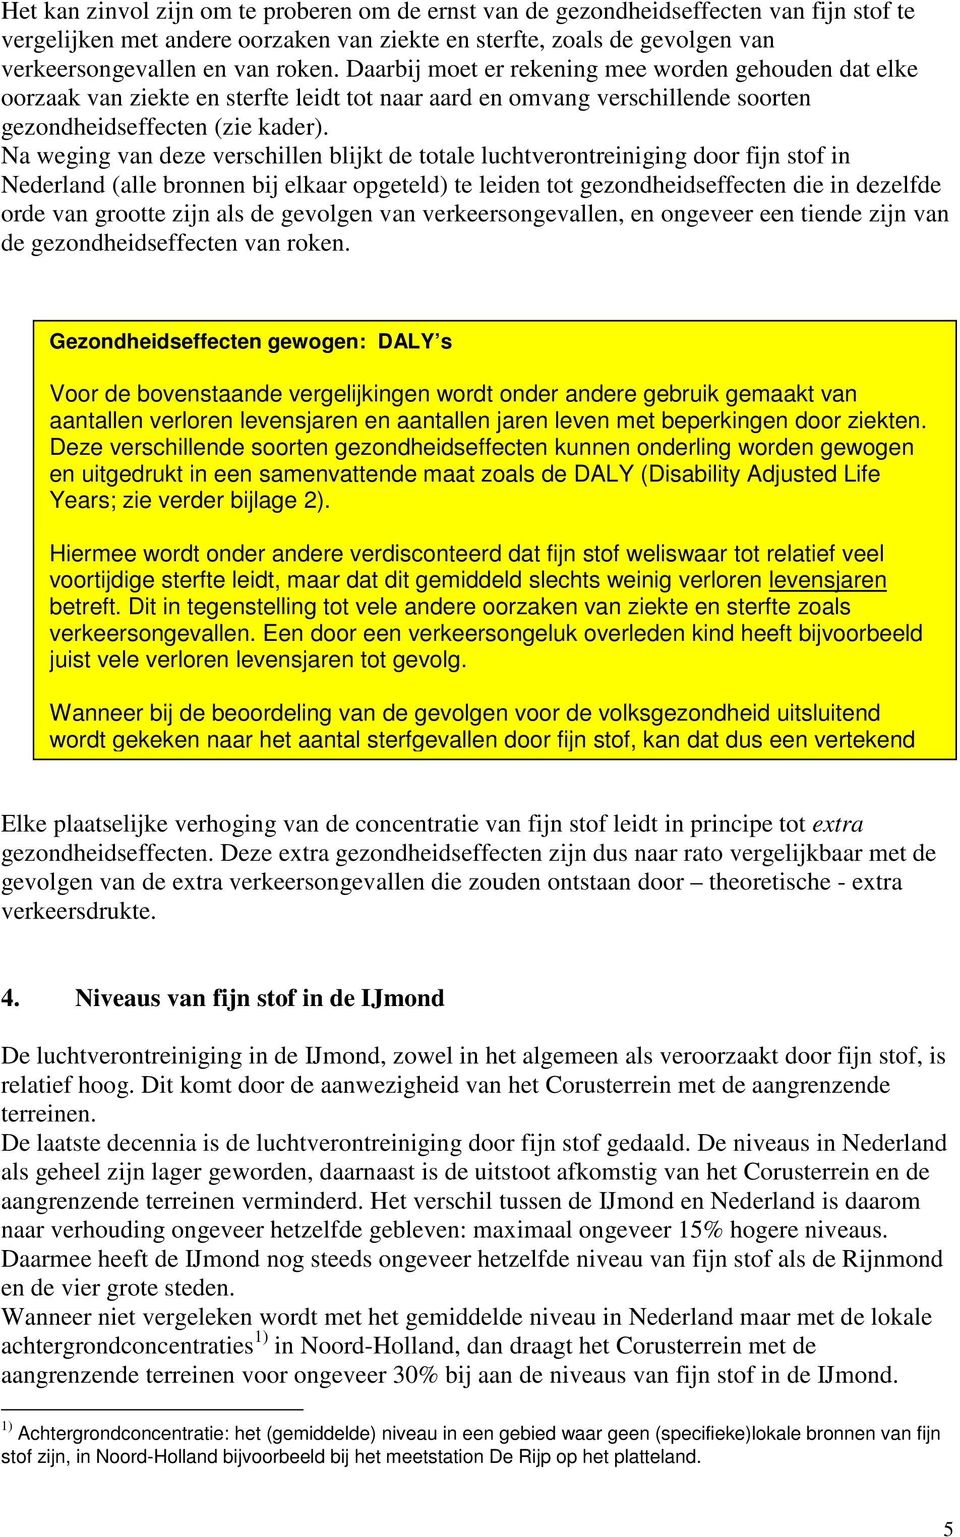 Na weging van deze verschillen blijkt de totale luchtverontreiniging door fijn stof in Nederland (alle bronnen bij elkaar opgeteld) te leiden tot gezondheidseffecten die in dezelfde orde van grootte